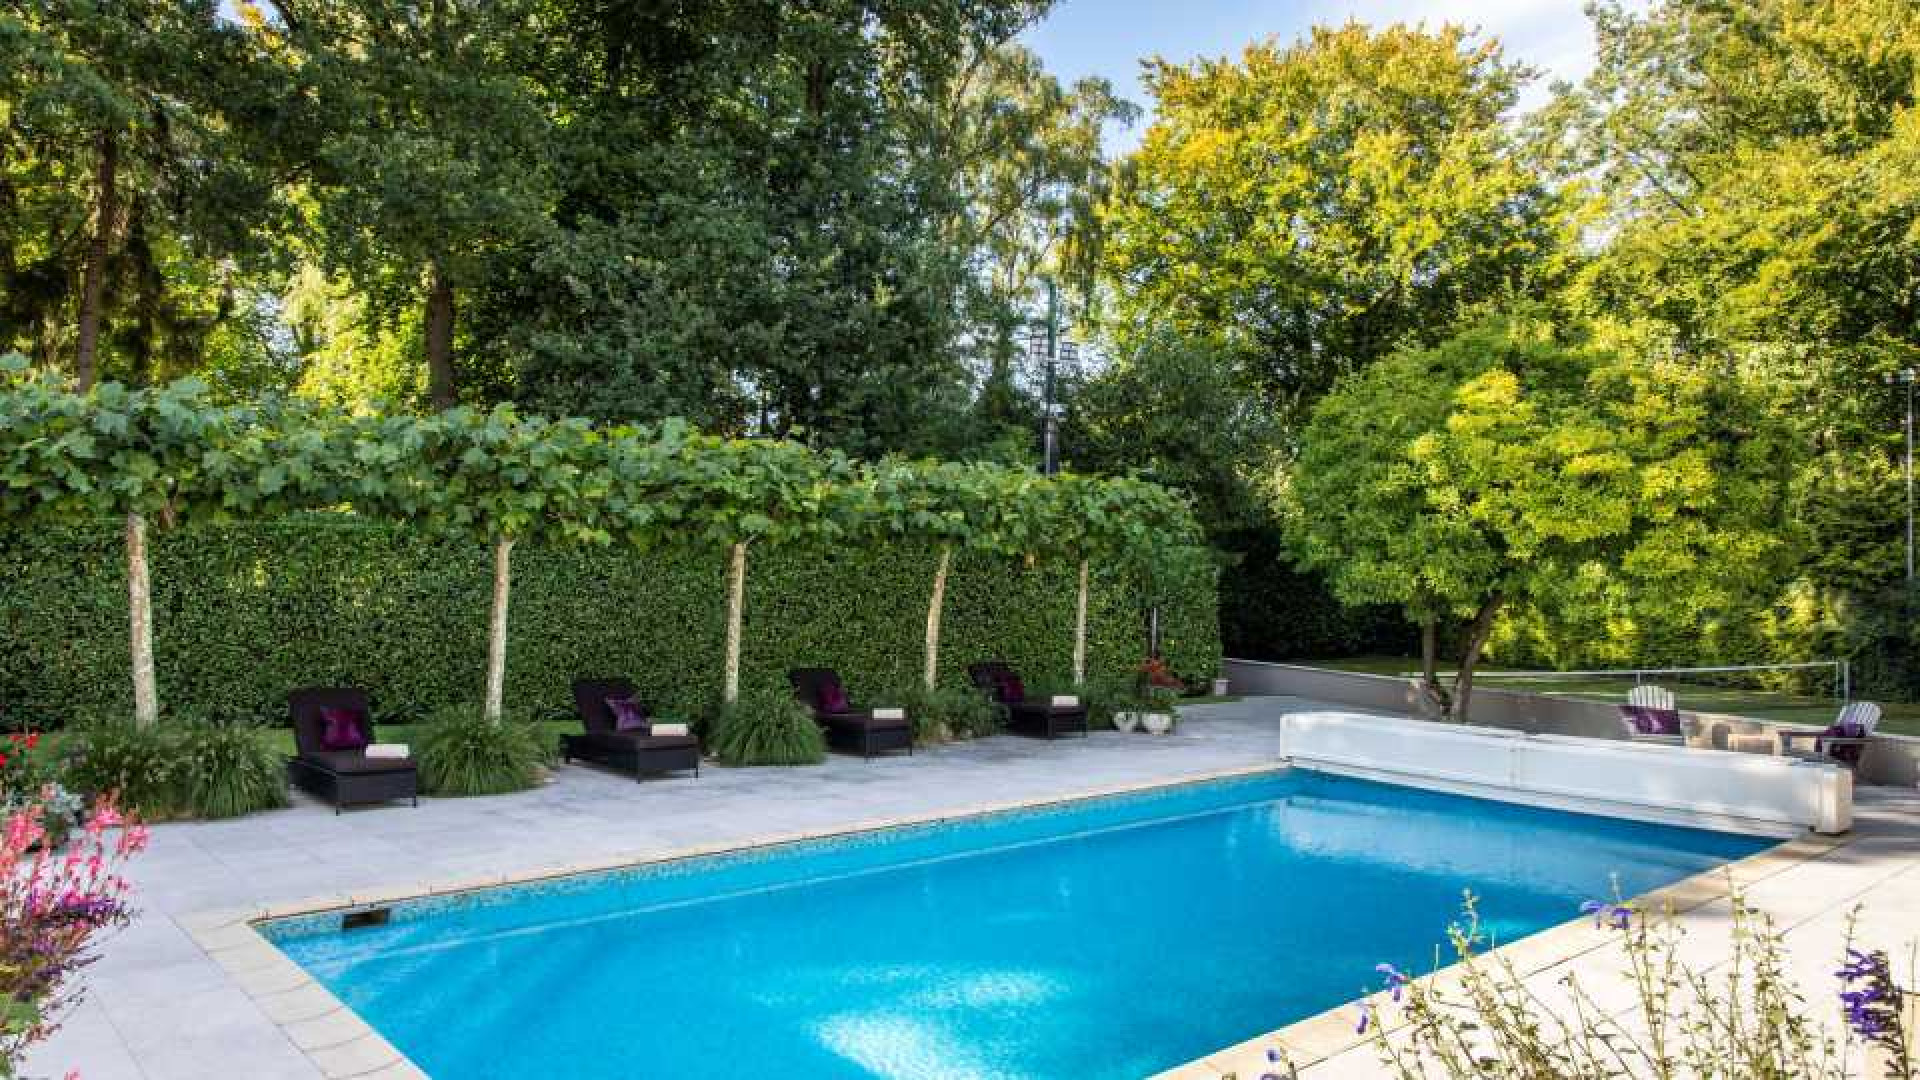 Rene Froger zet zijn villa met zwembad, tennisbaan, gym, sauna en kantoorvilla te koop. Zie foto's 18